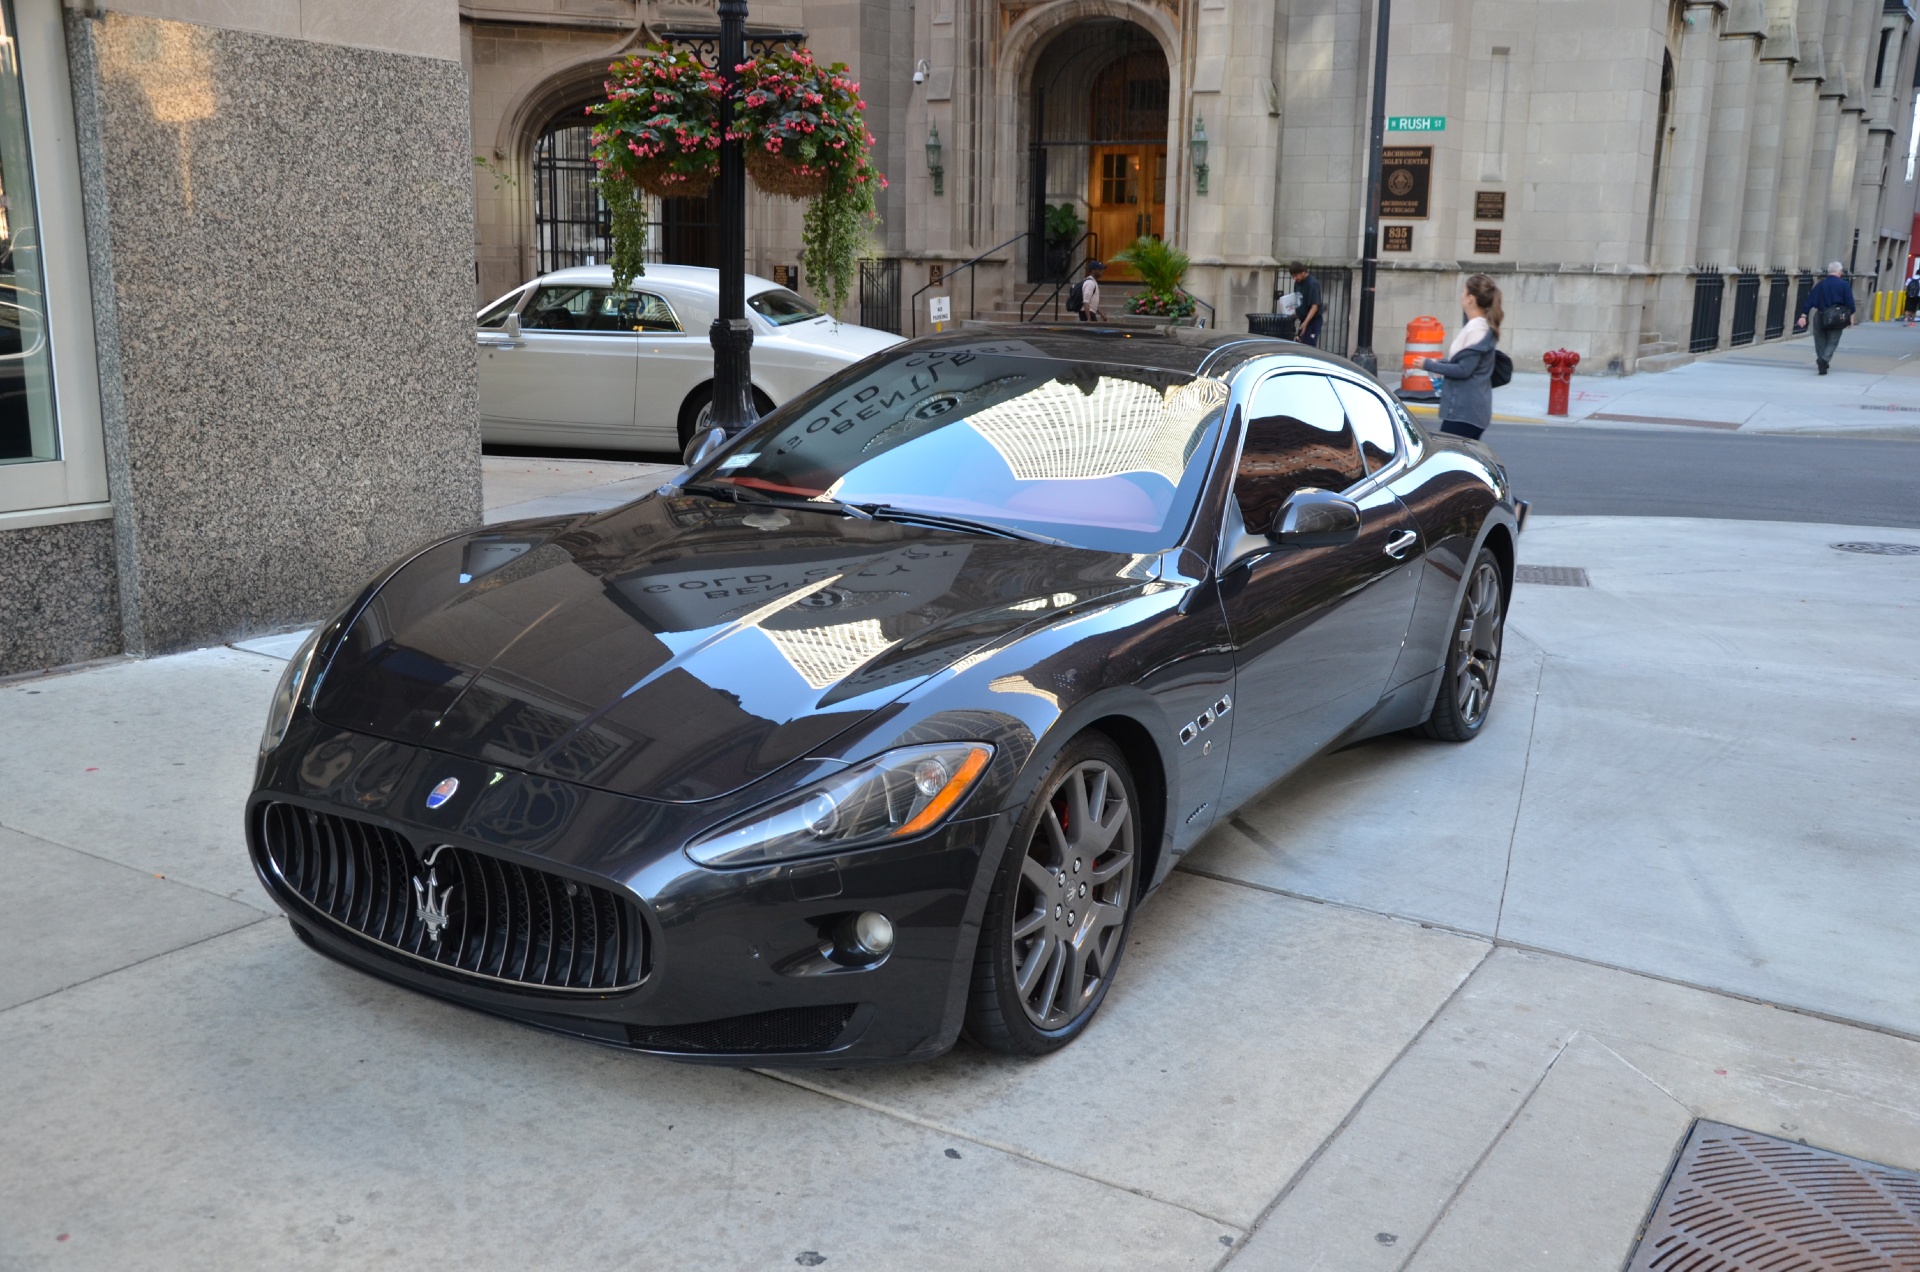 2010 Maserati GranTurismo Stock # 51146 for sale near ...